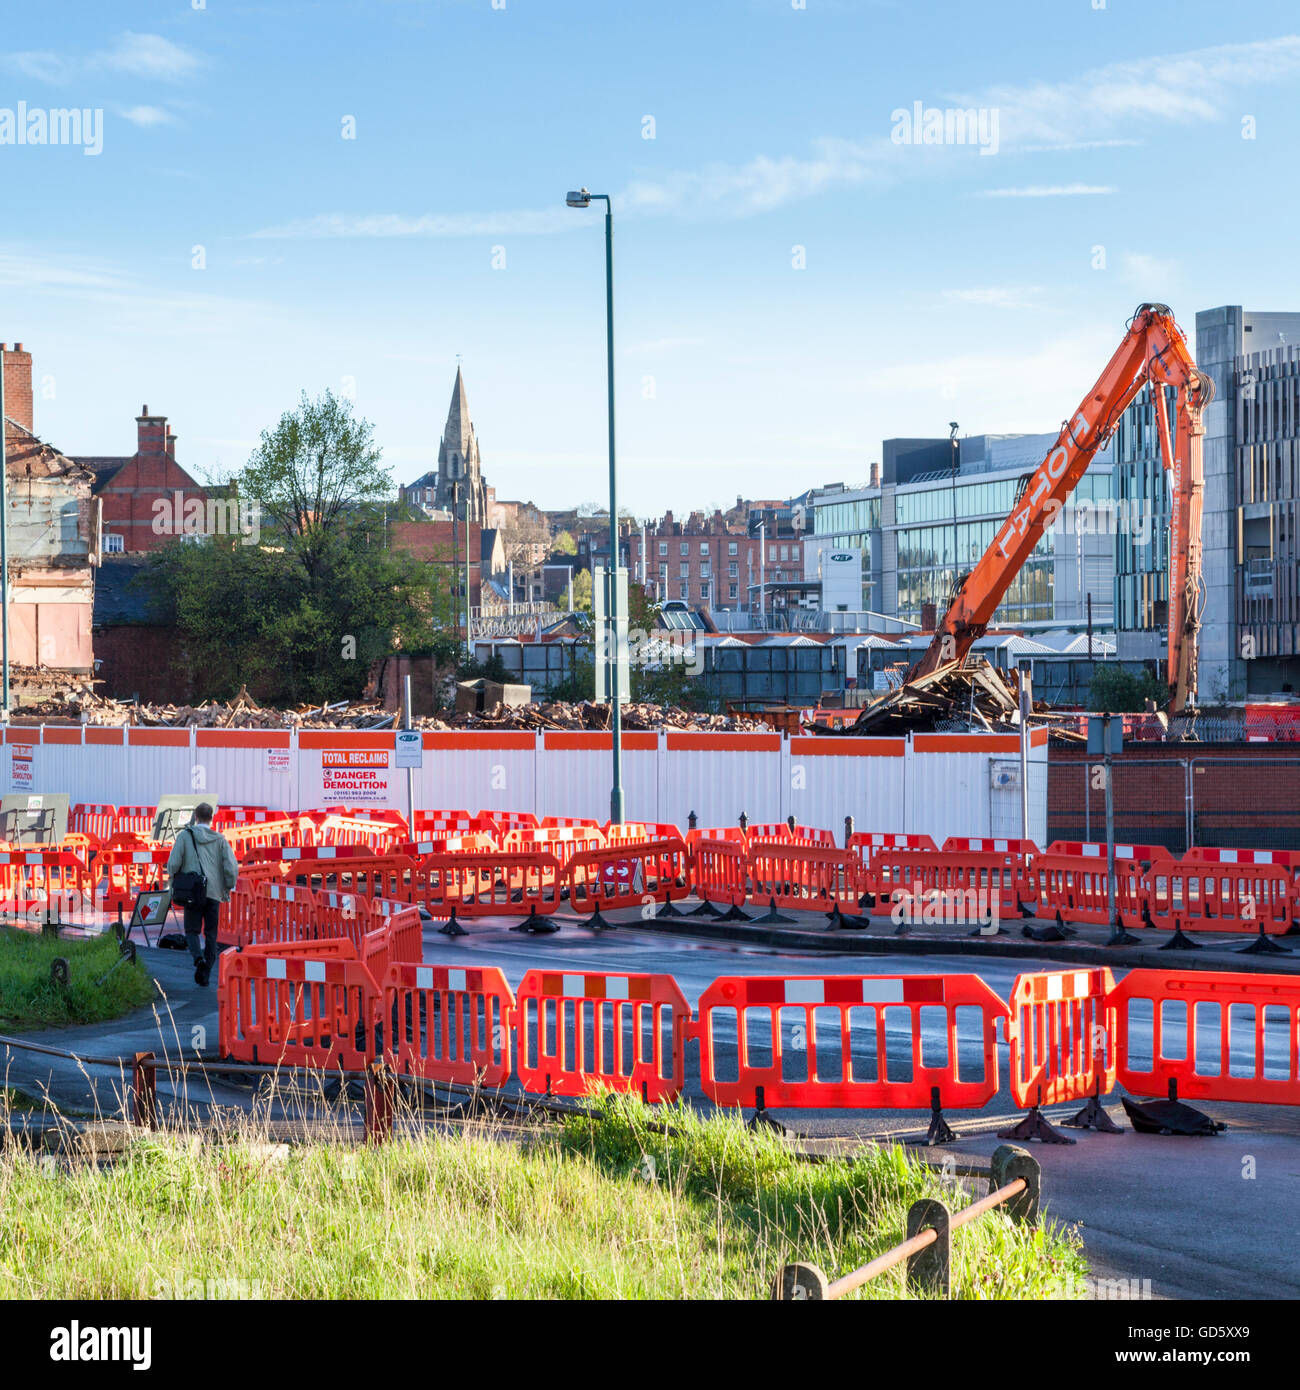 Chapter 8 barrières de sécurité routières temporaires près de travaux de démolition, Nottingham, England, UK Banque D'Images